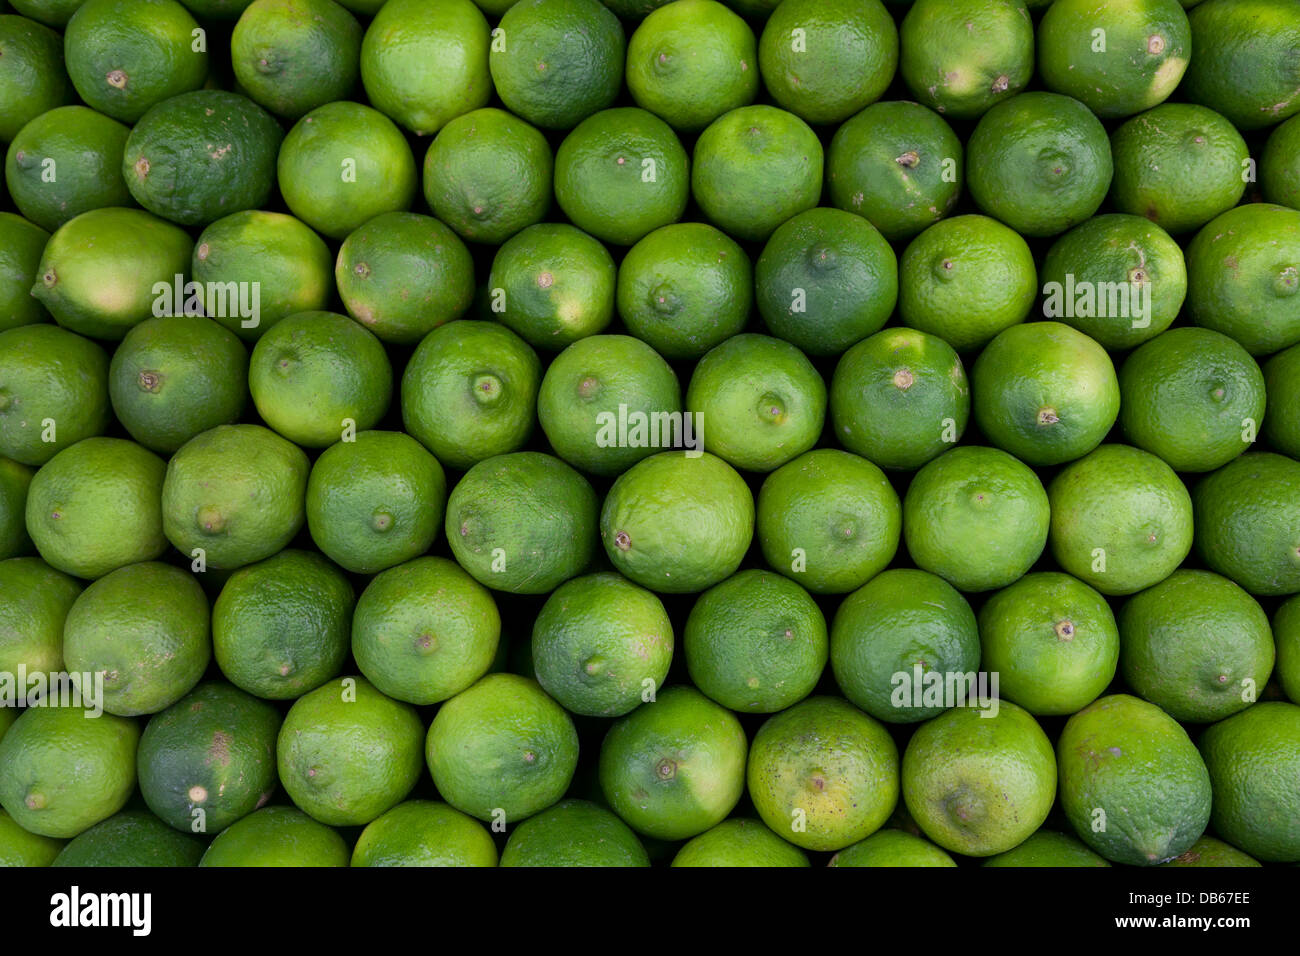 Vert frais limes full frame Banque D'Images